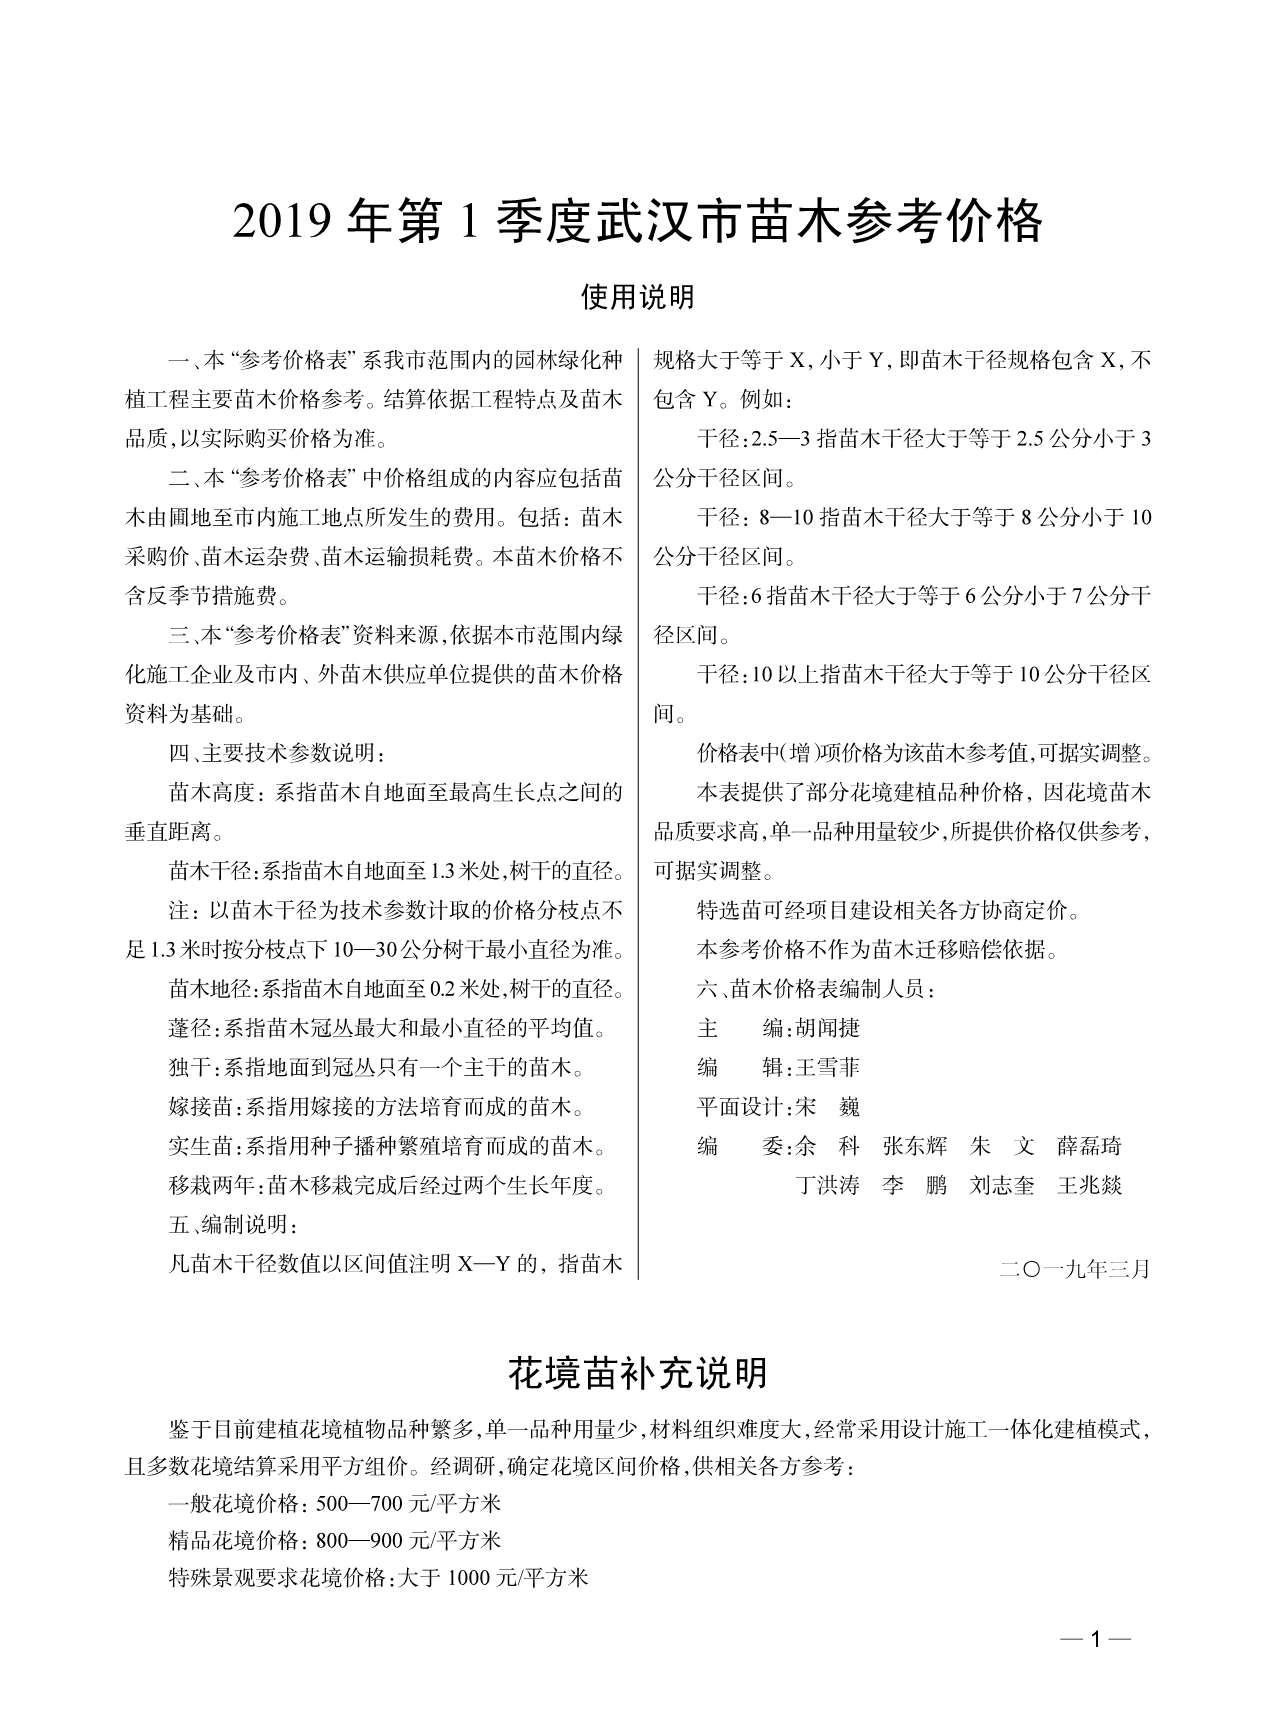 武汉市2019年1月园林信息价